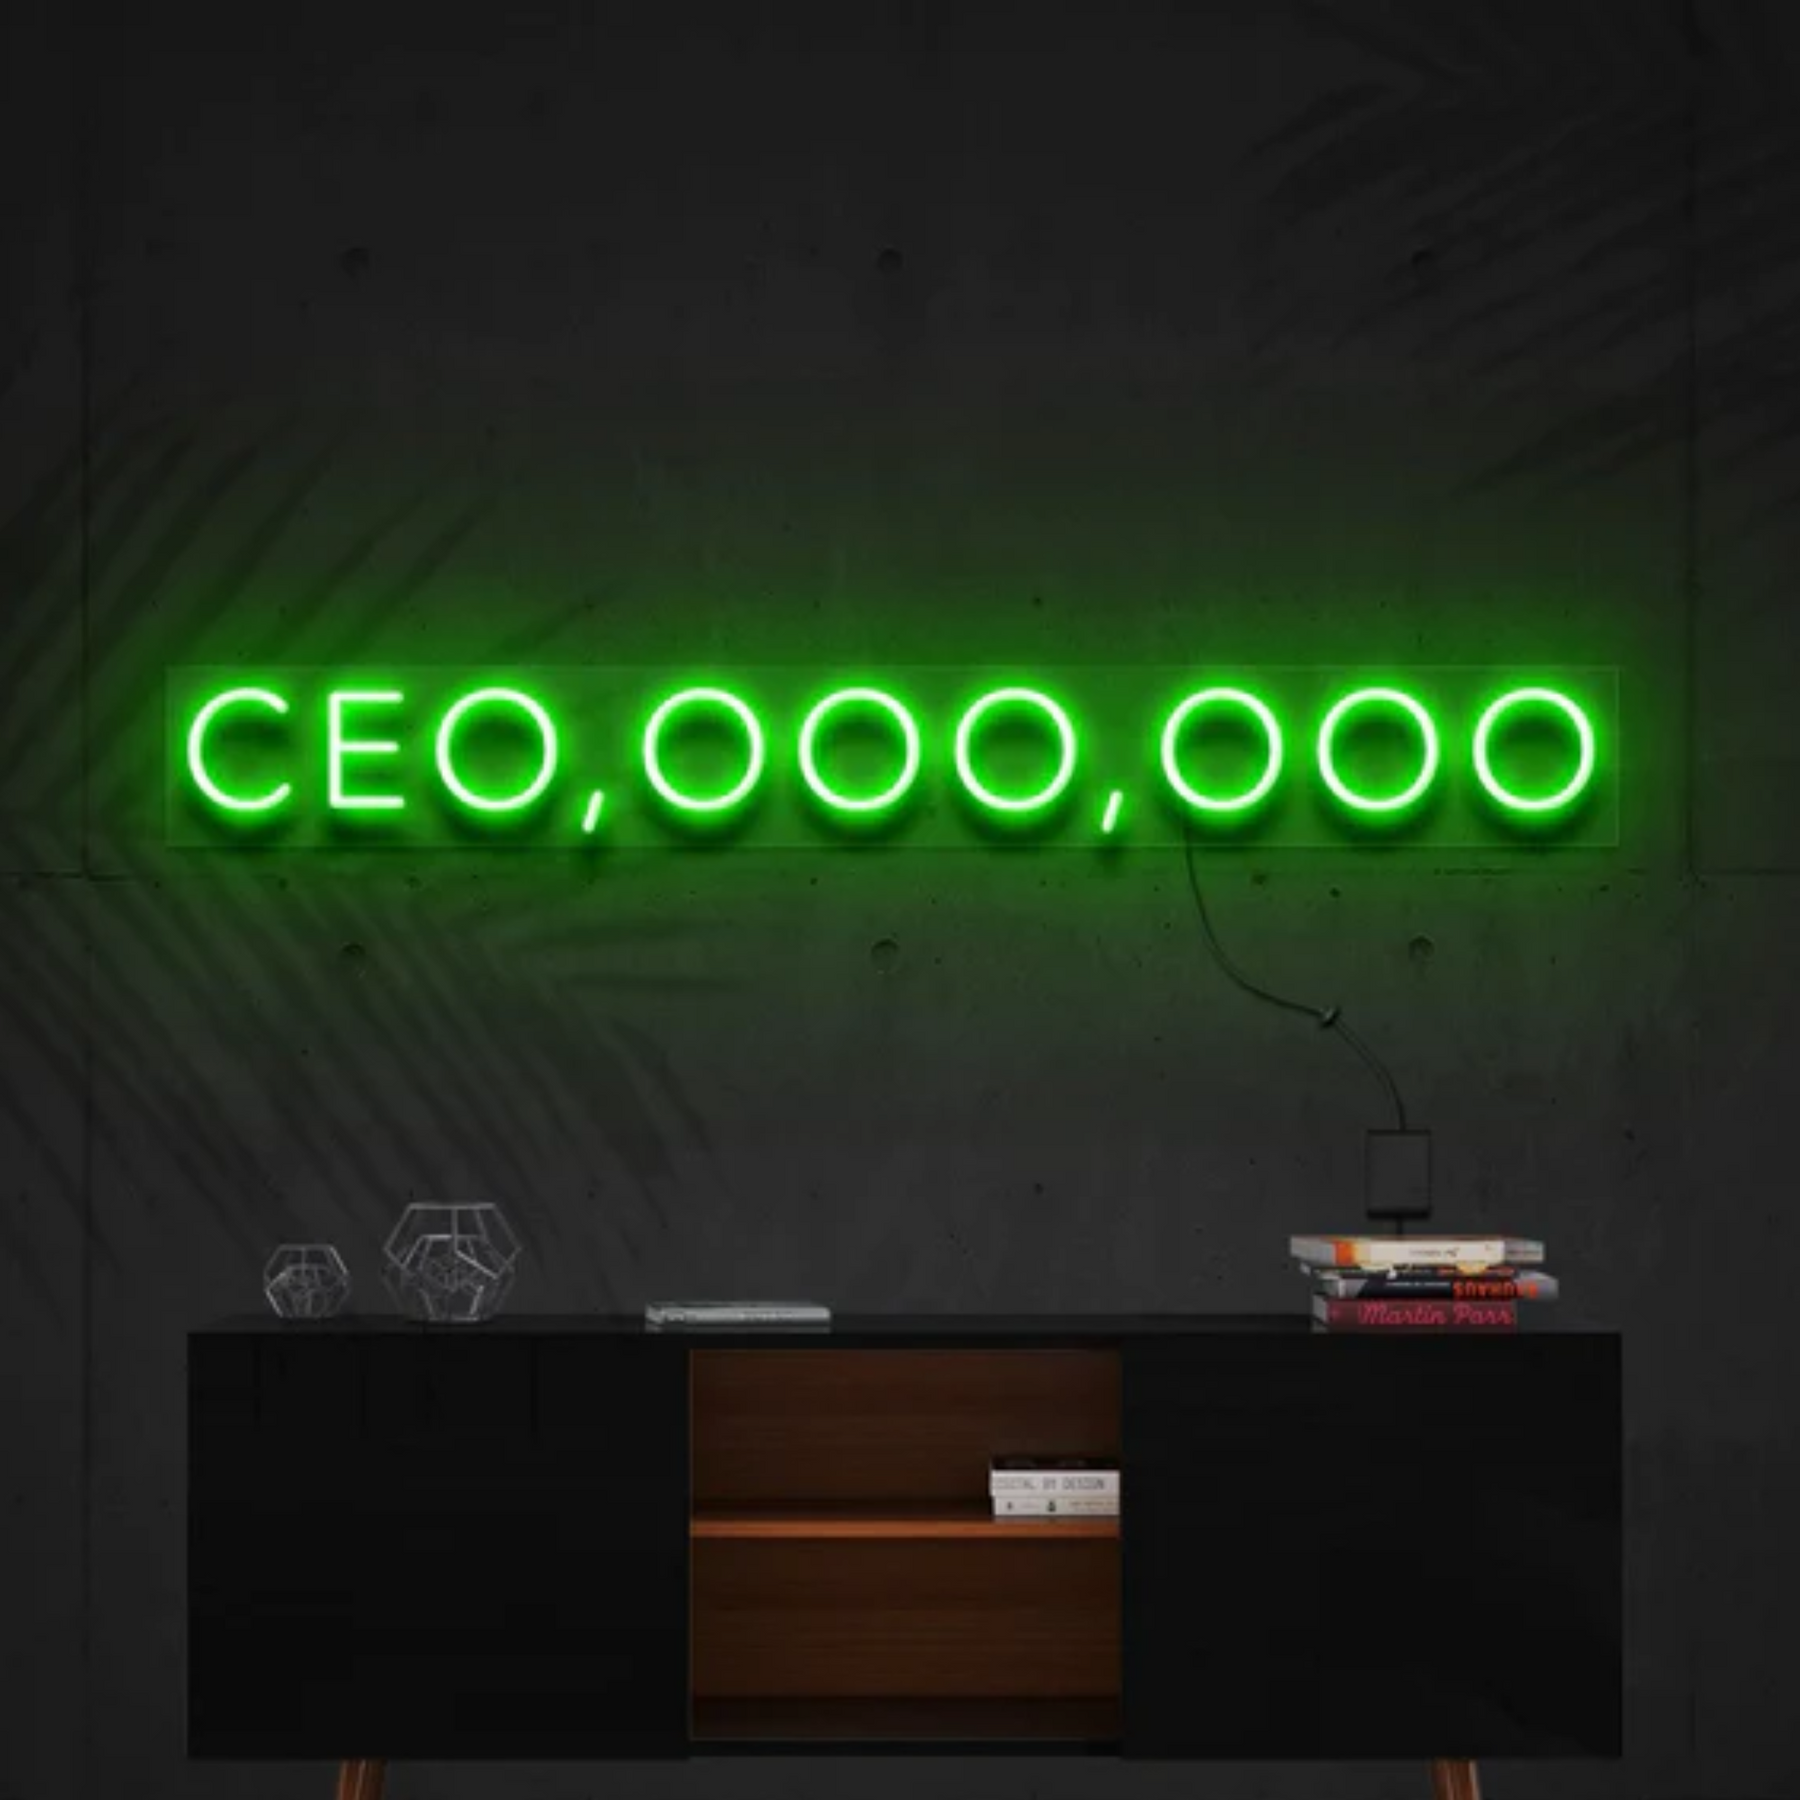 CEO, OOO, OOO